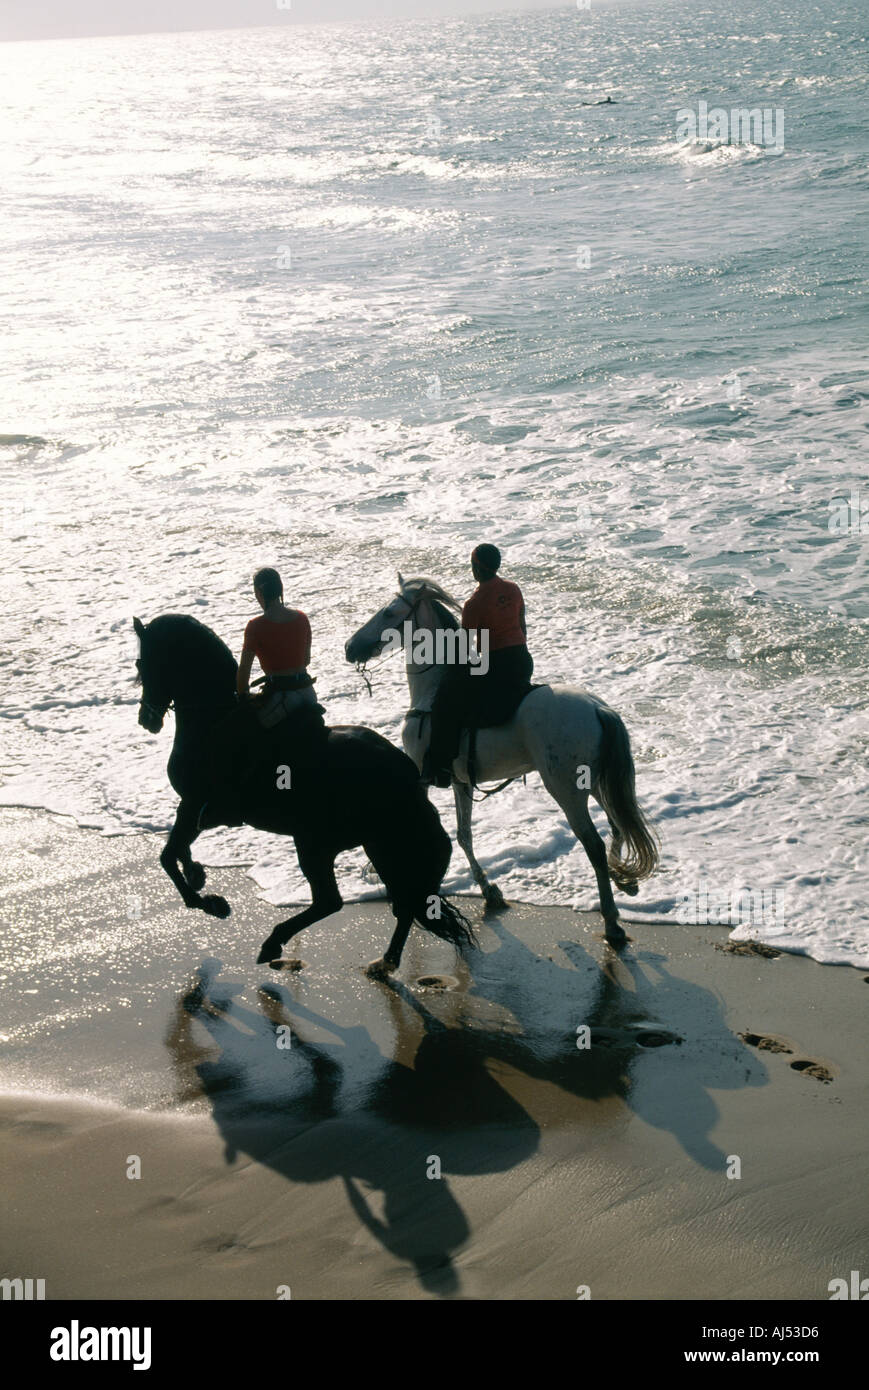 L'équitation sur la plage Maison de Vacances Espagne Costa de La Luz Tarifa silhouette soleil en fin de soirée contre-jour rétroéclairage contra luz Banque D'Images